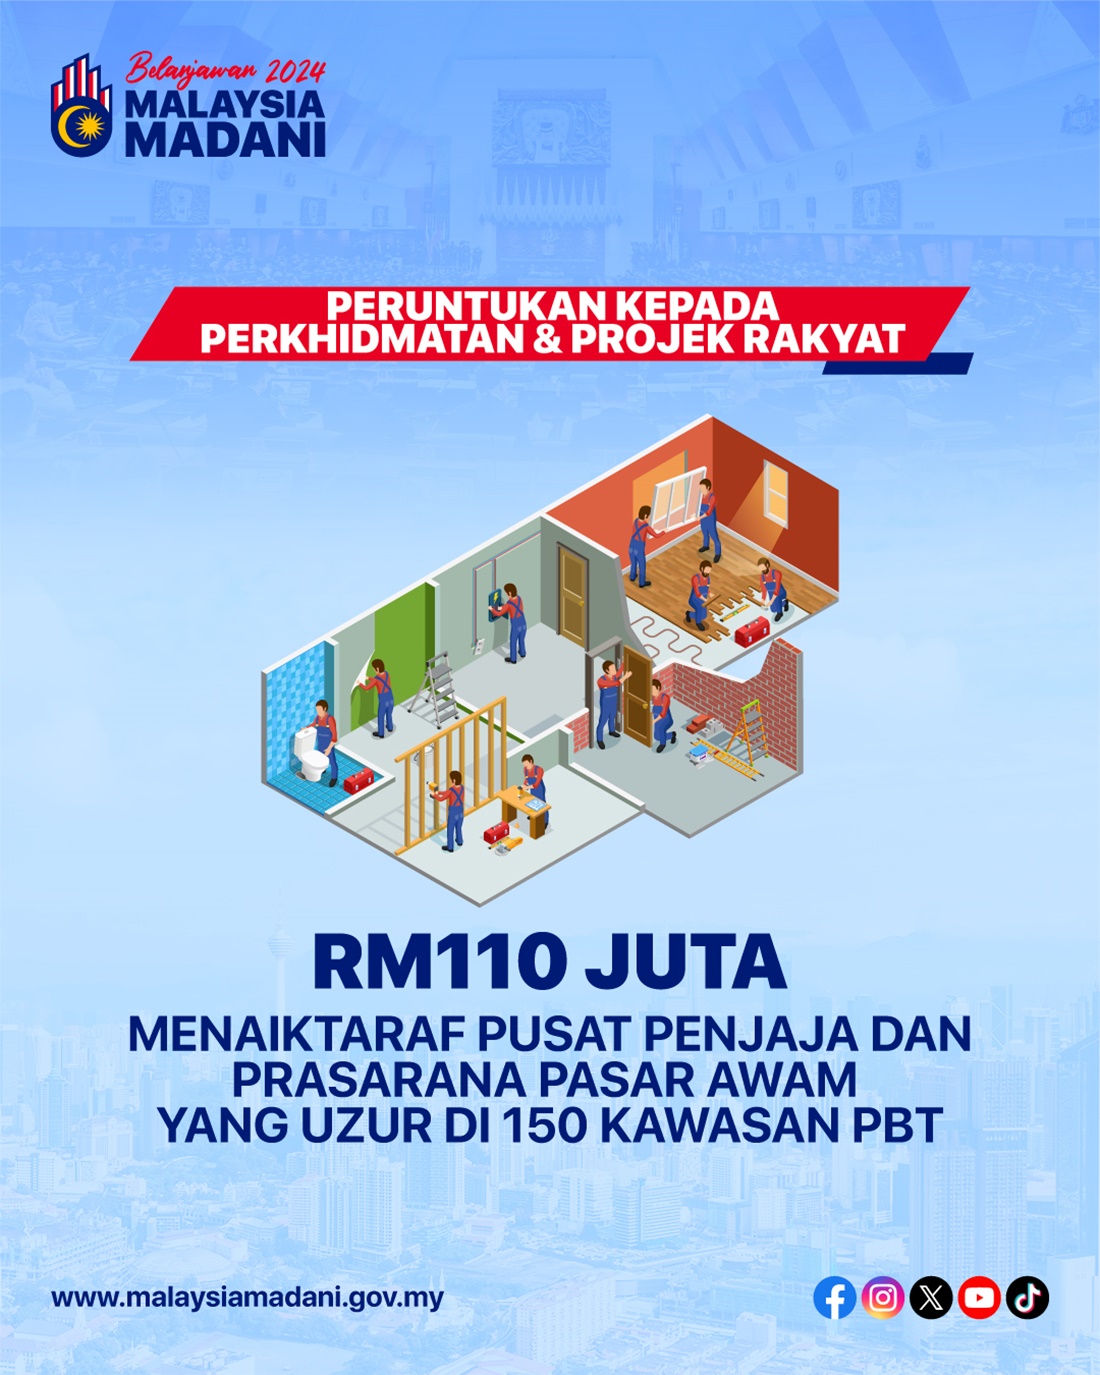 Copy of Mengutama-Perkhidmatan-_-Projek-Rakyat